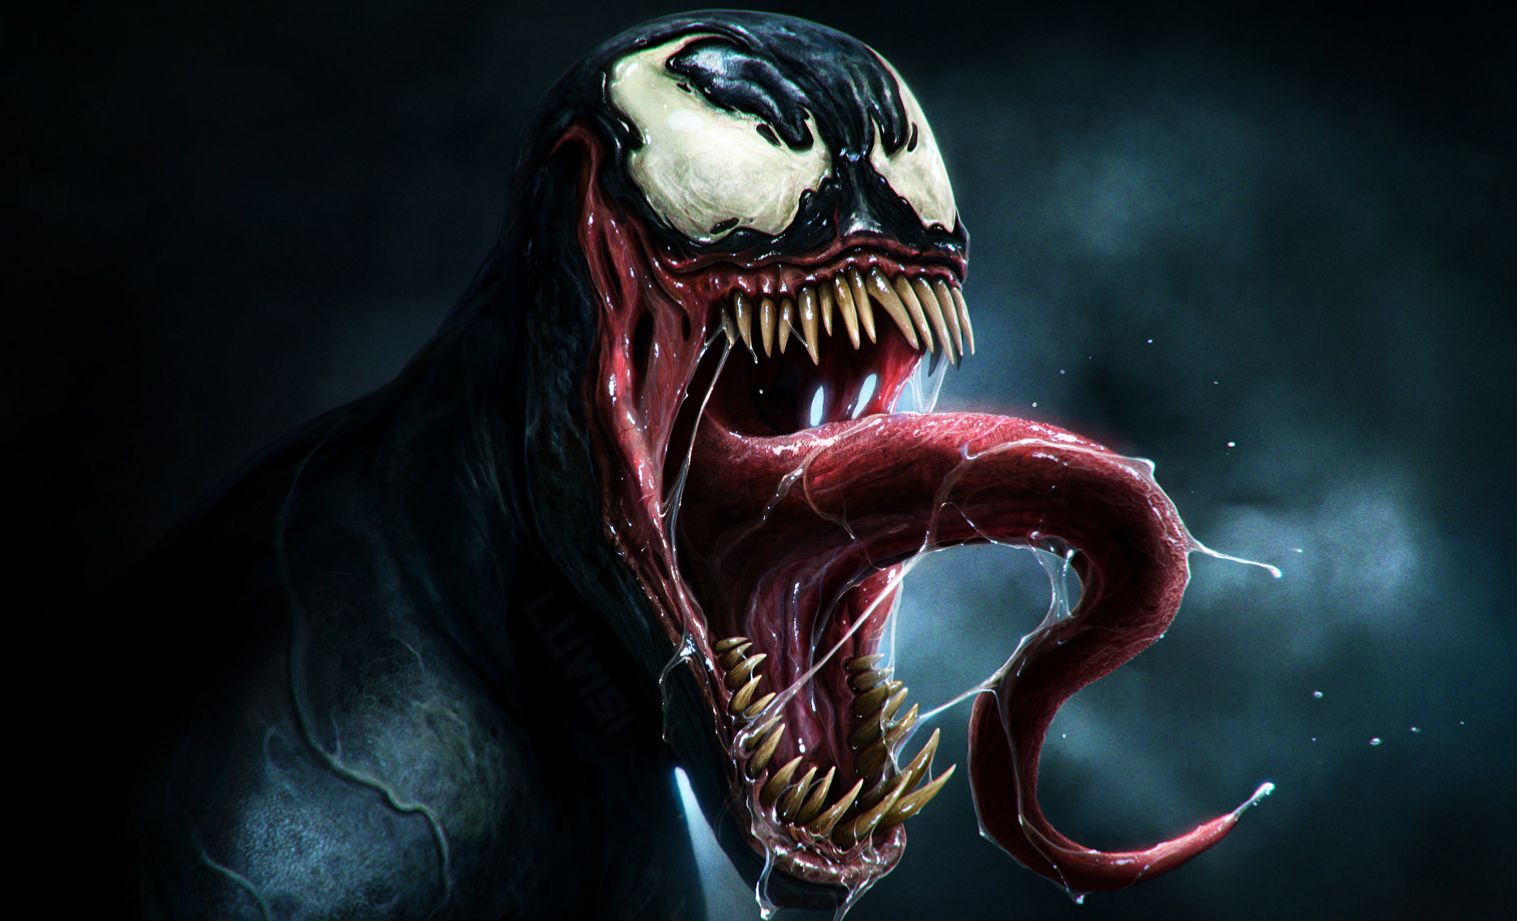 Venom's open maw